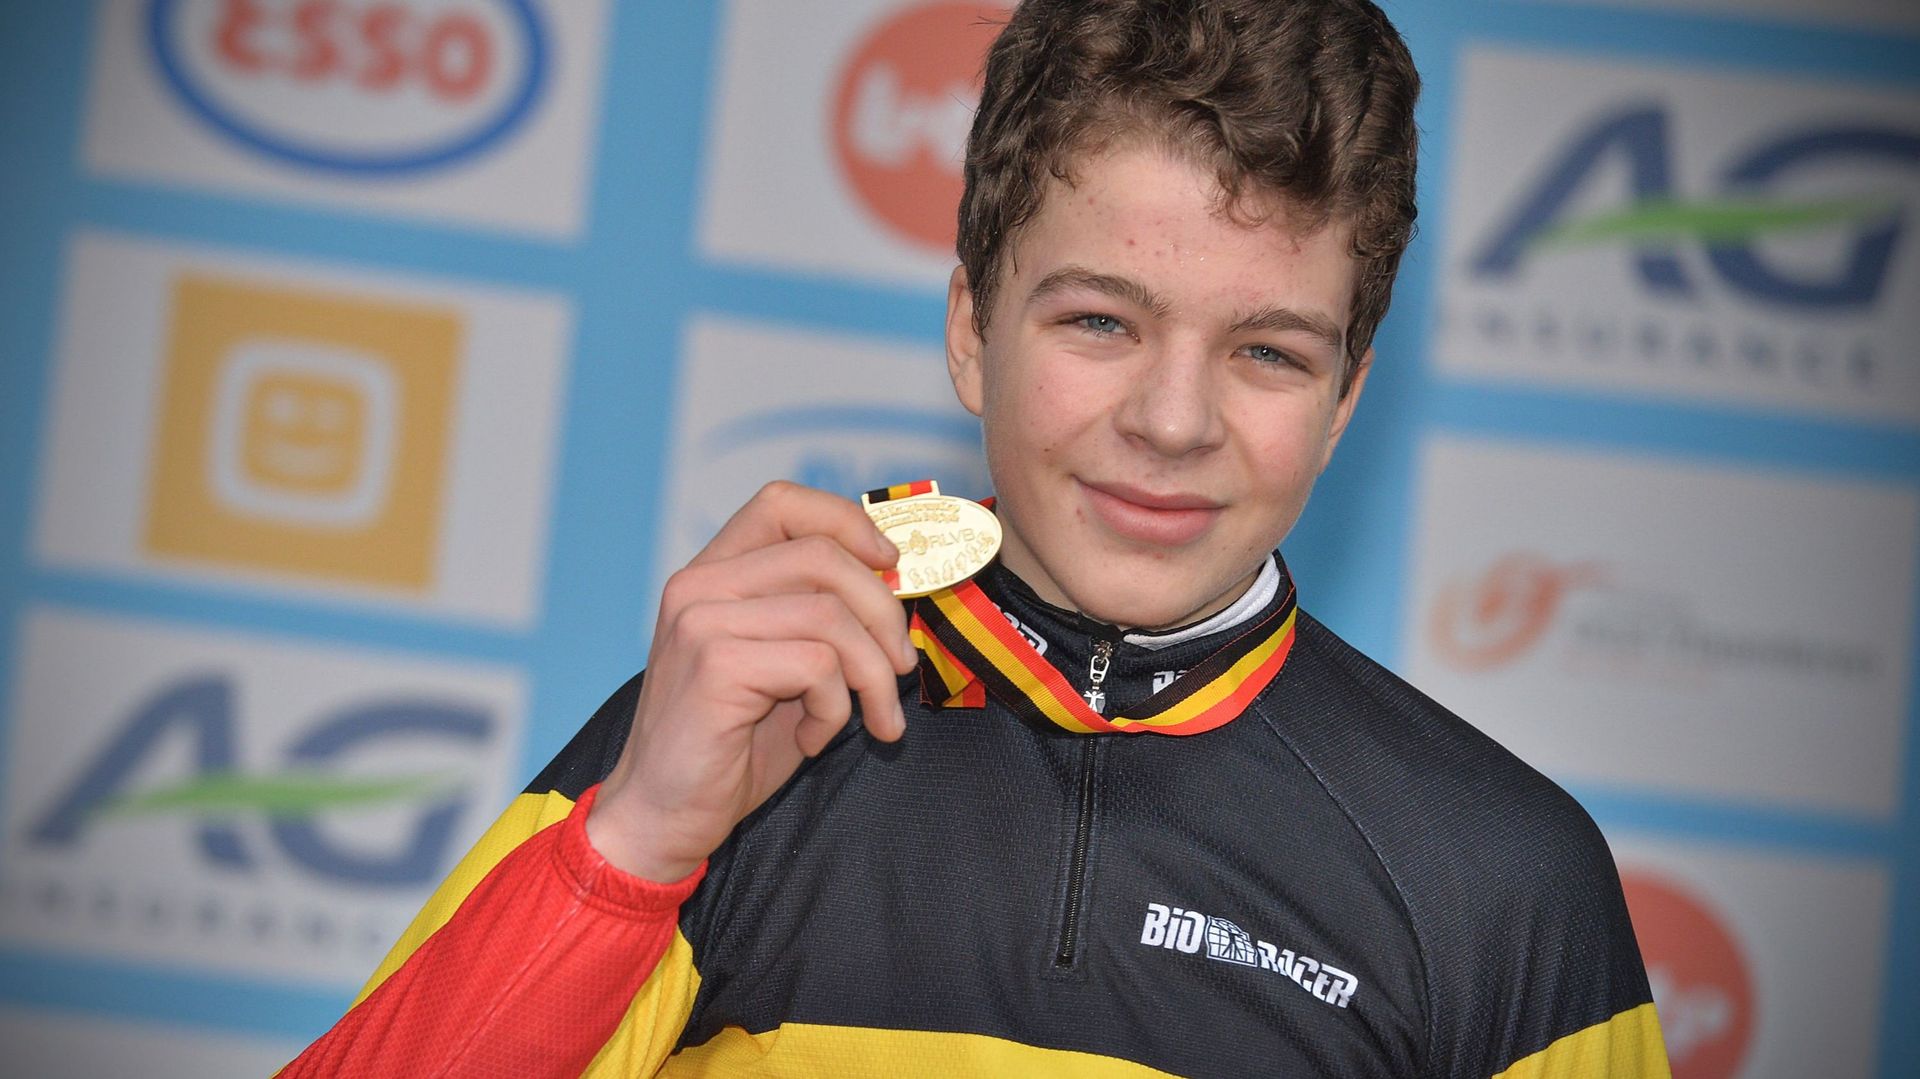 Le jeune Florian Vermeersch, Champion de Belgique de cyclocross en 2015